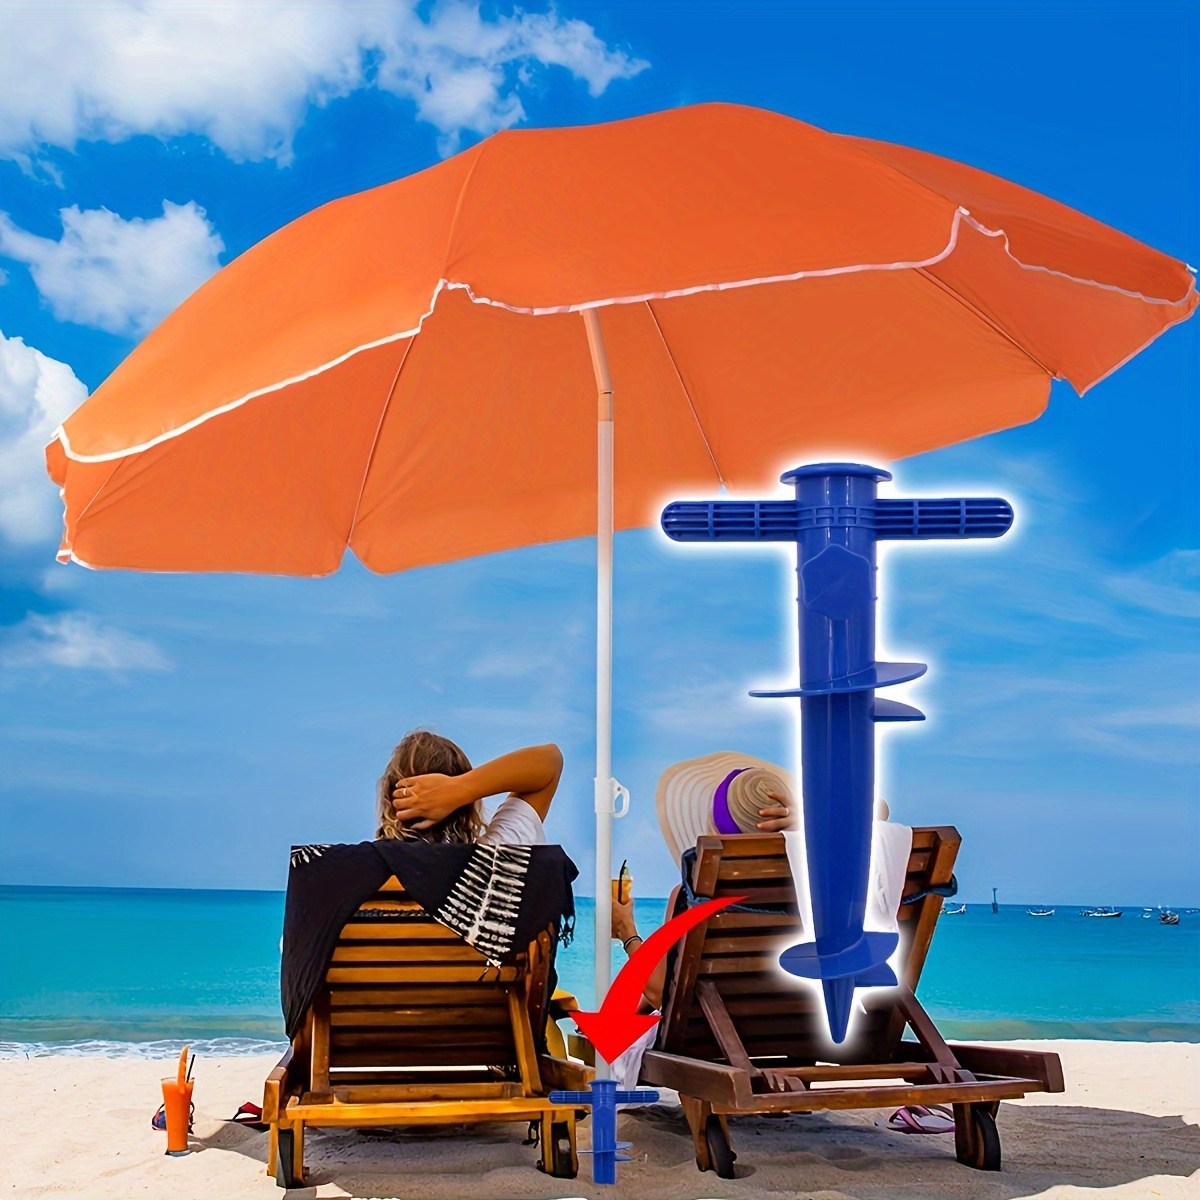 

1pc Ancre de sable pour parasol de plage en plastique, pour parasol, canne à pêche, parasol de jardin - Accessoire de support d'ombrage extérieur facile à utiliser, sûr et durable